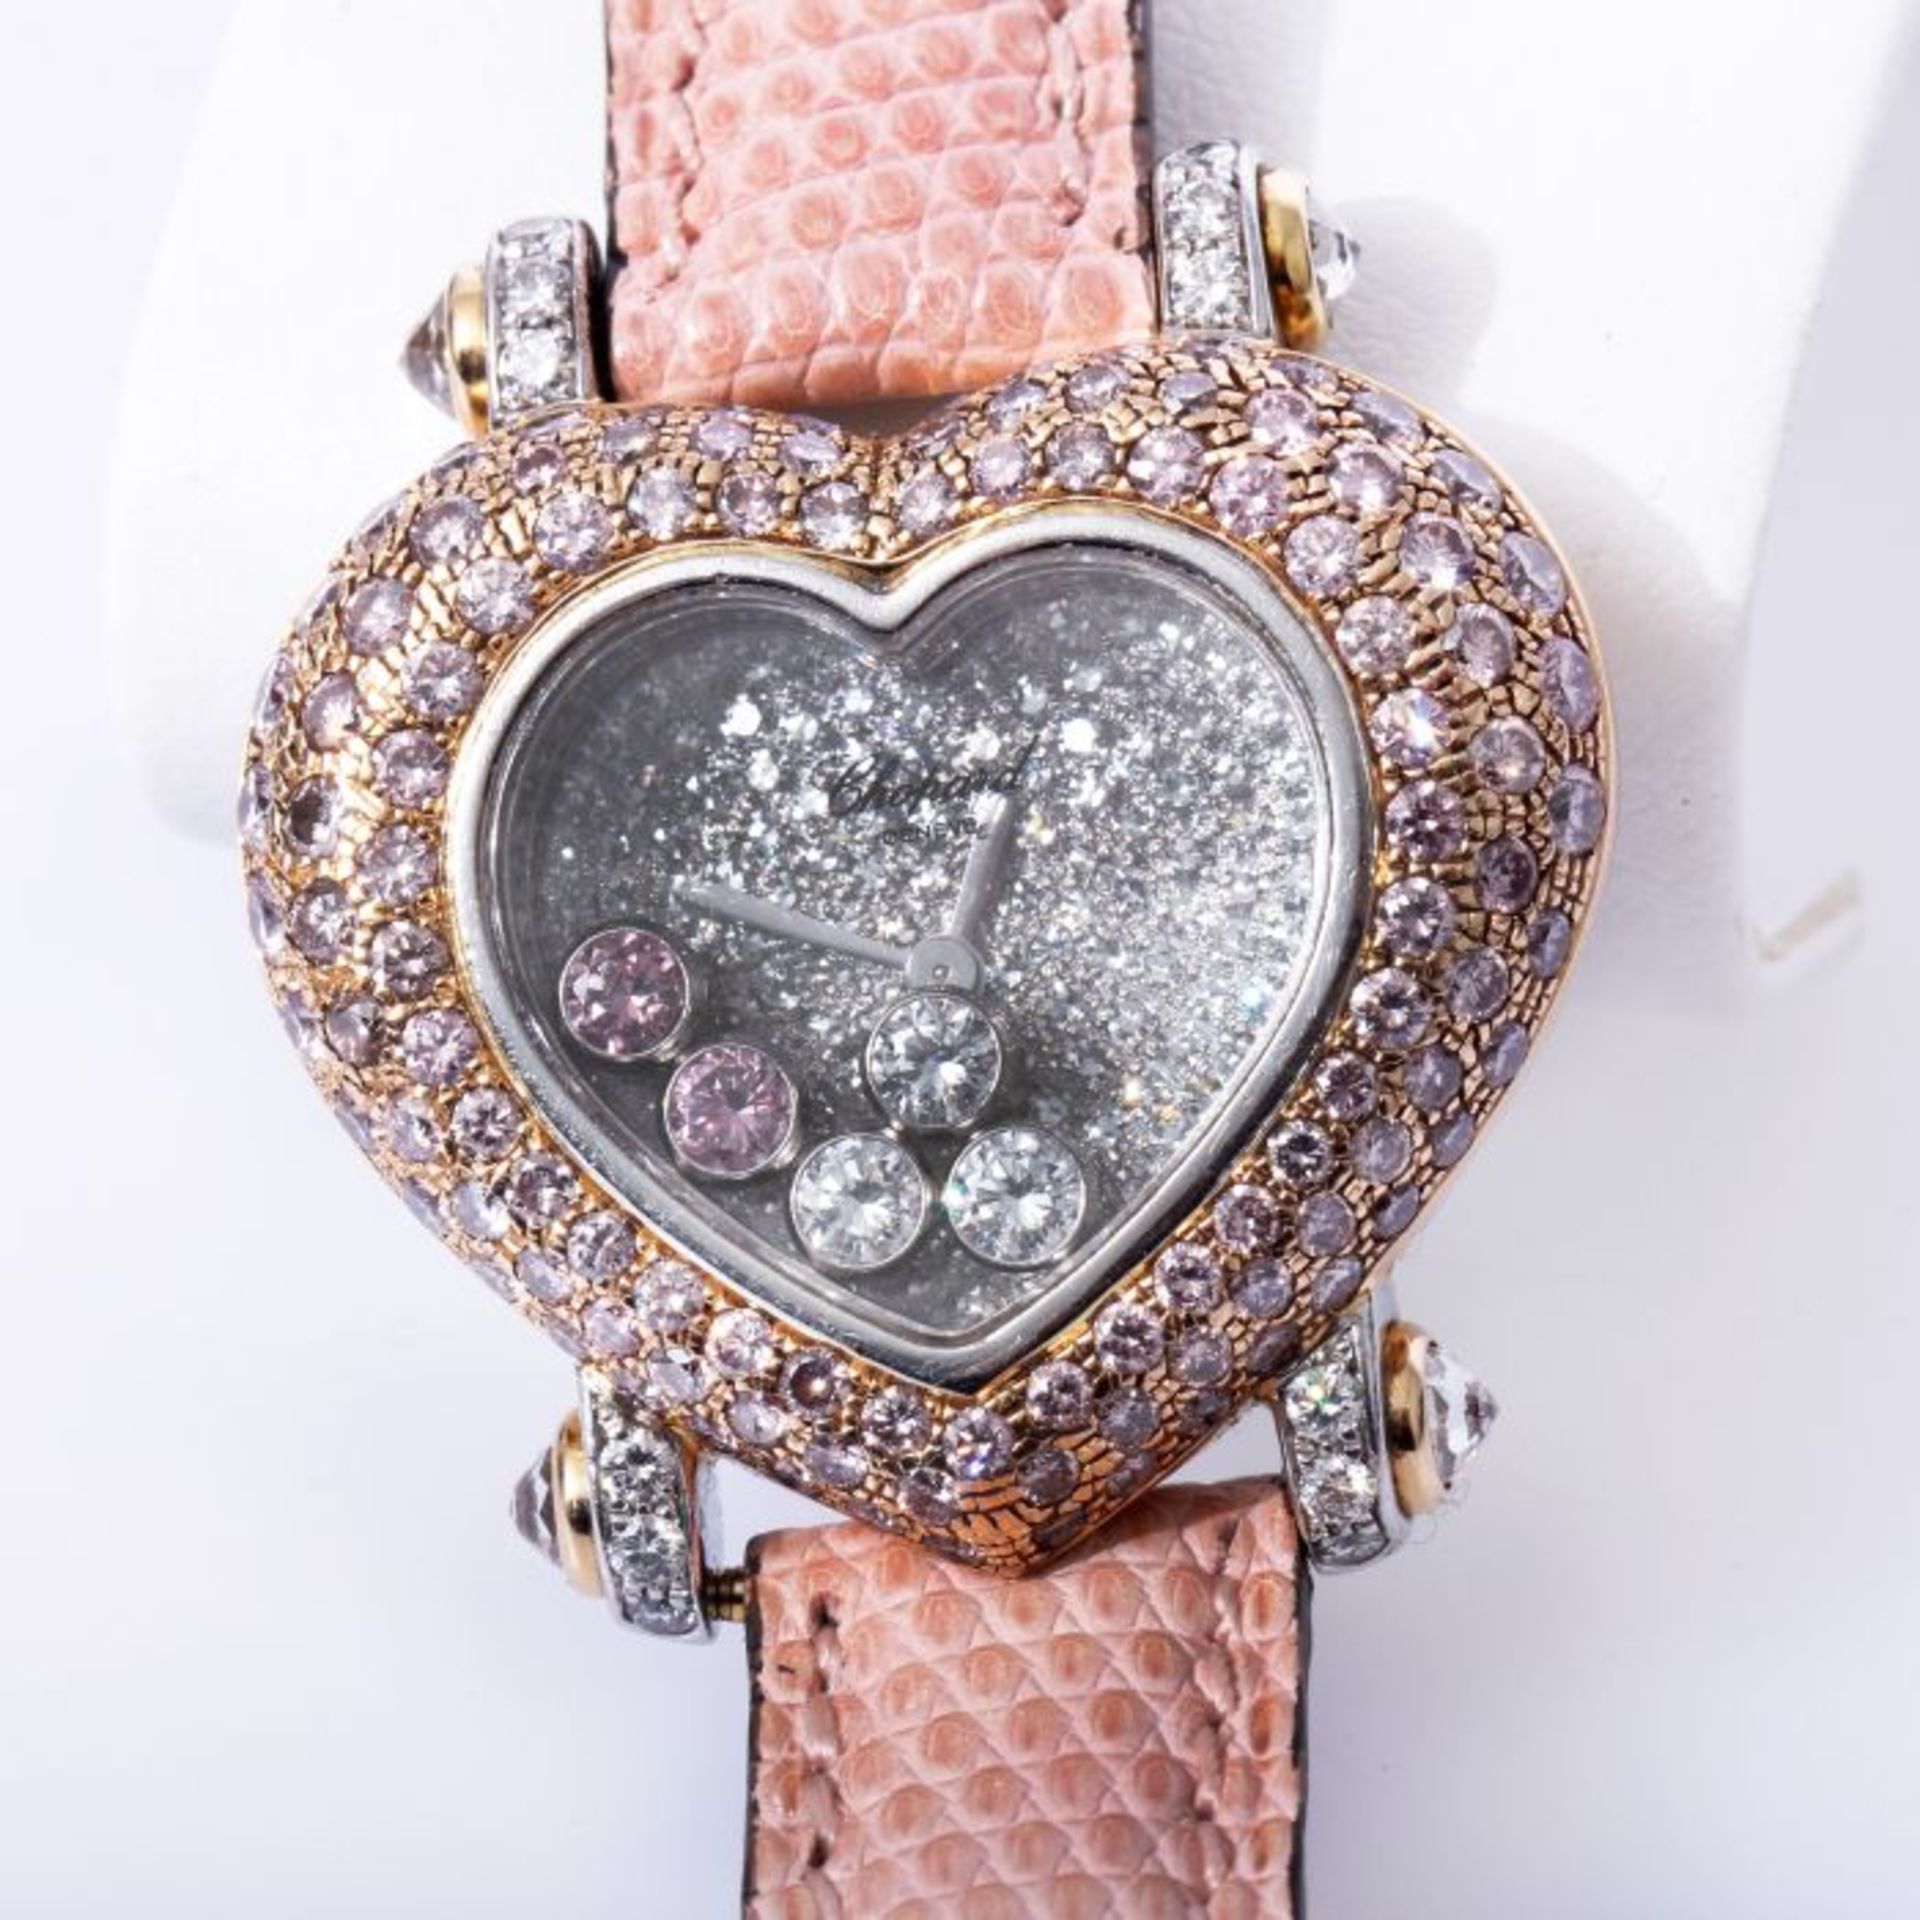 Chopard Happy Diamonds Uhr mit 2,43ct. pinken Brillanten NP 102.780 Euro750 Weiß- und Roségold. - Bild 4 aus 7